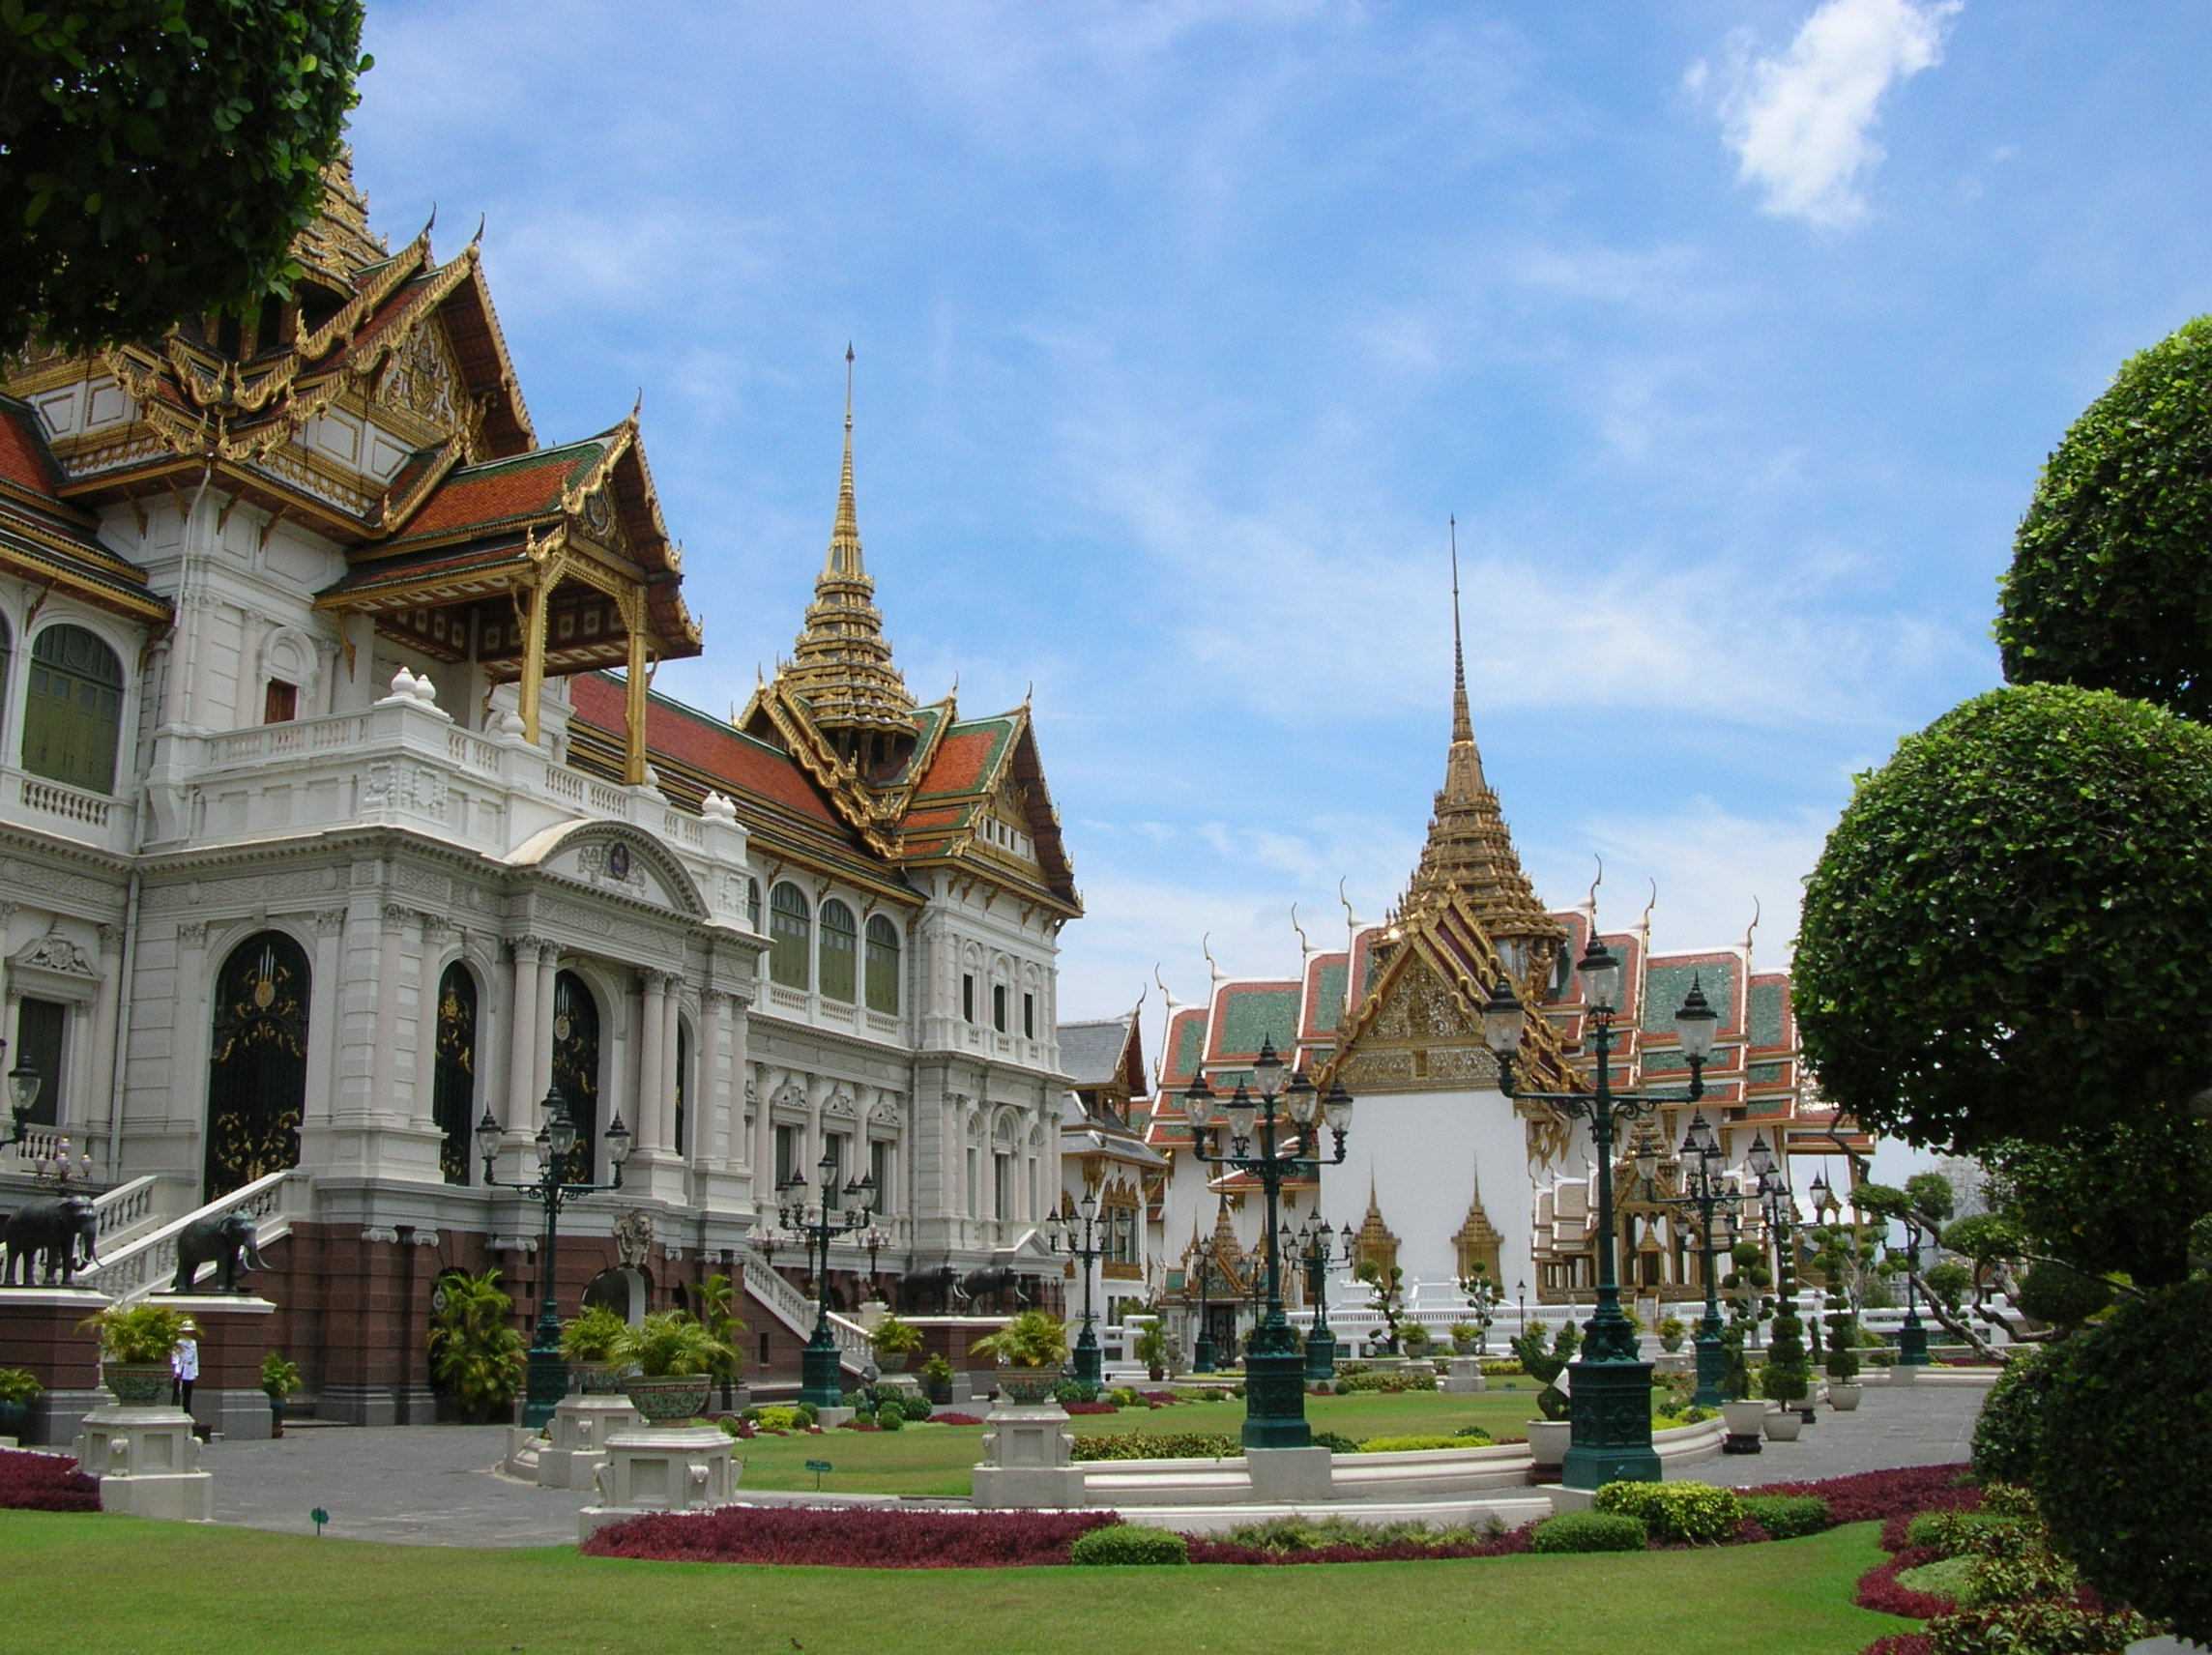 Покажи бангкок. Королевский дворец в Бангкоке. Большой Королевский дворец Бангкок Таиланд. Императорский дворец Тайланд. Гранд Палас Бангкок.